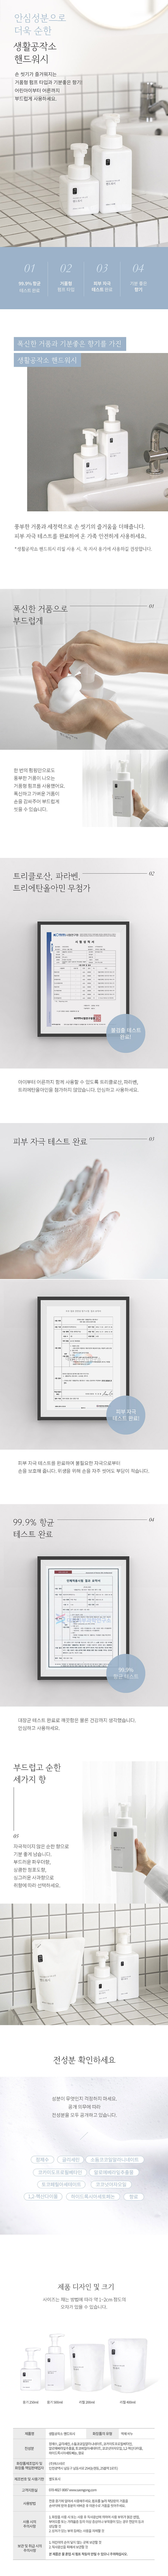 handwash_deatail.jpg